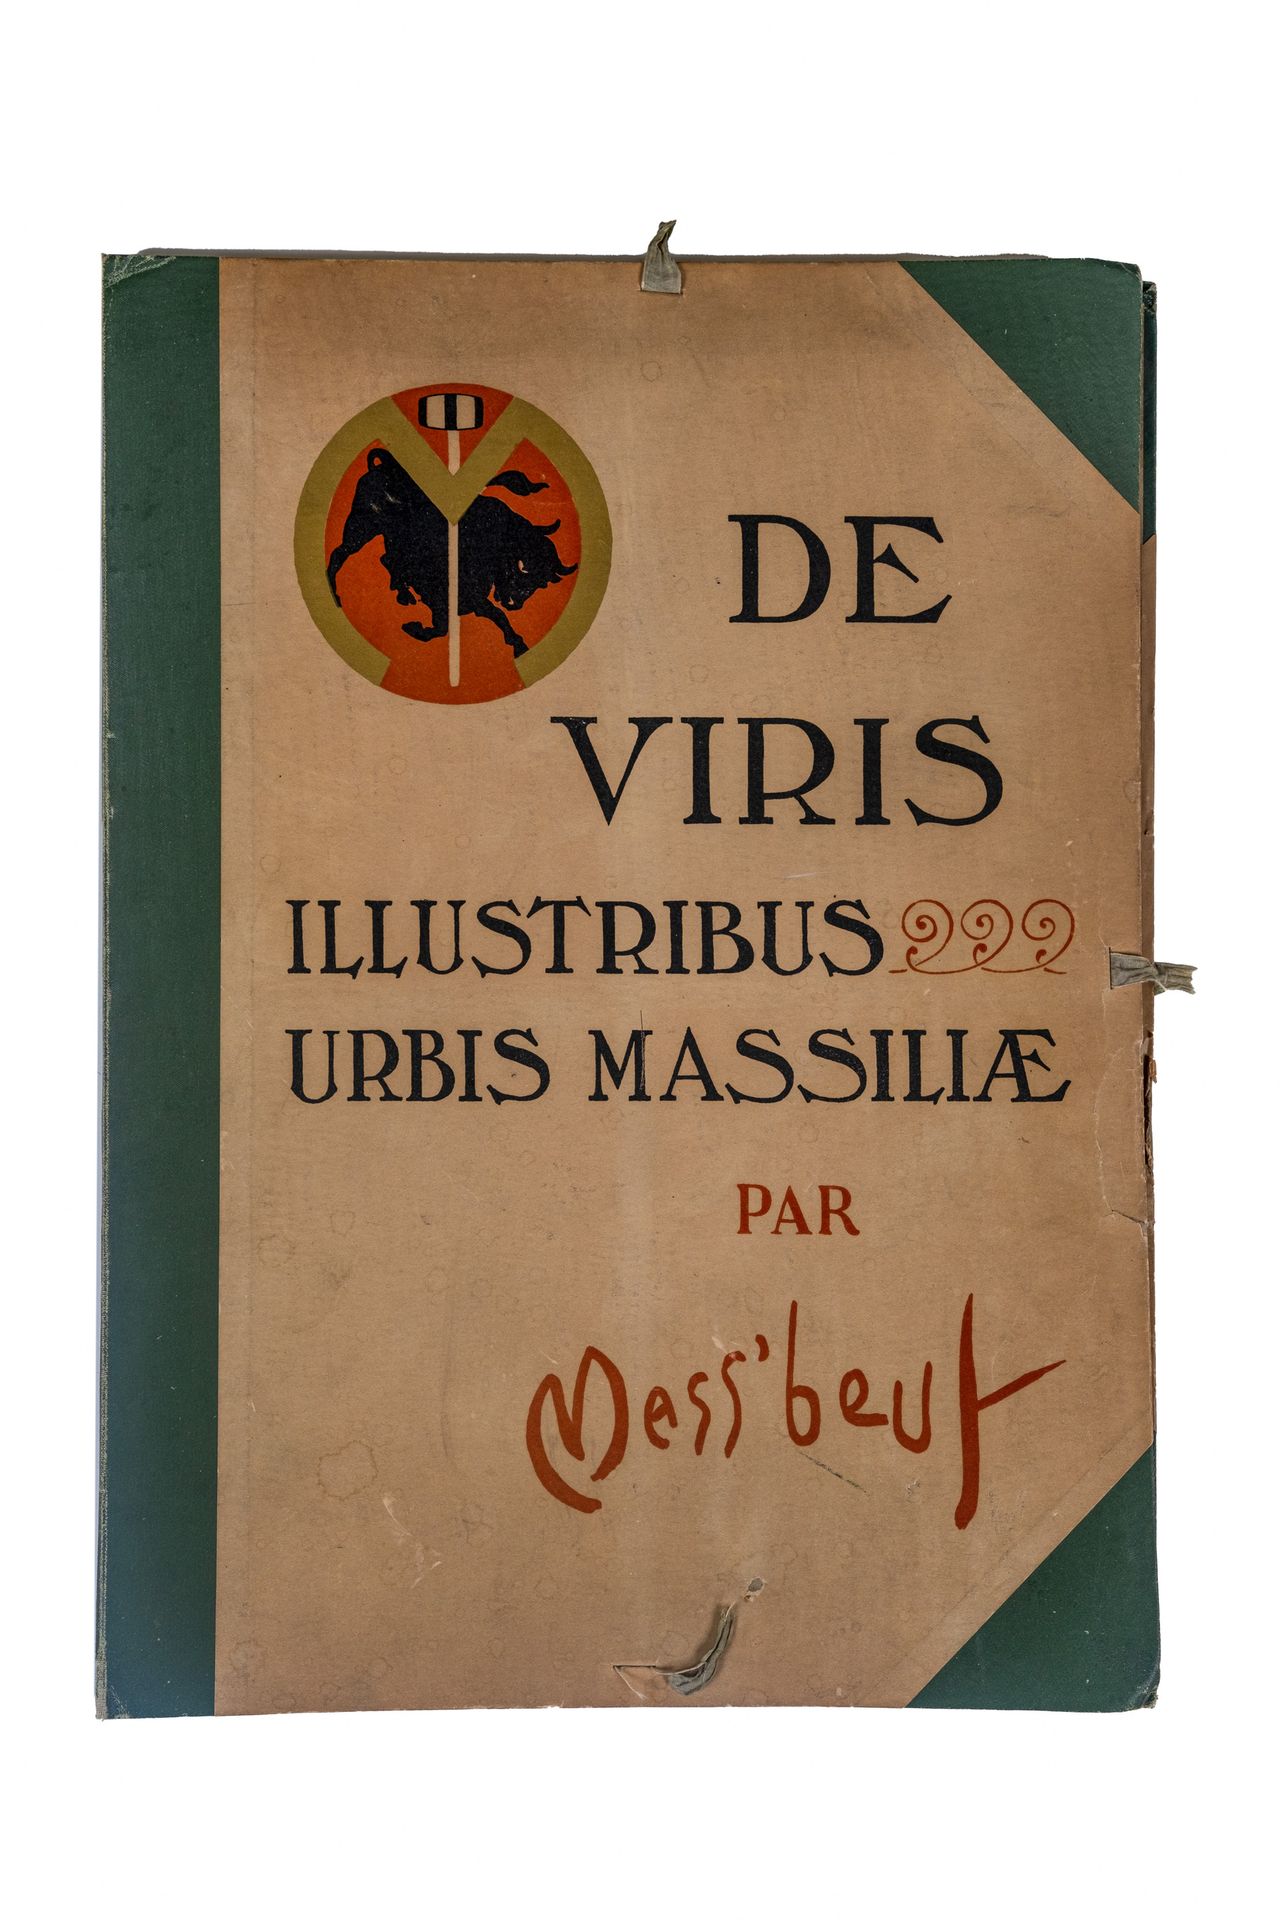 Null MASSA BASSA

"De Viris Illustribus Urbis Massiliae", 1900

Raccolta in form&hellip;